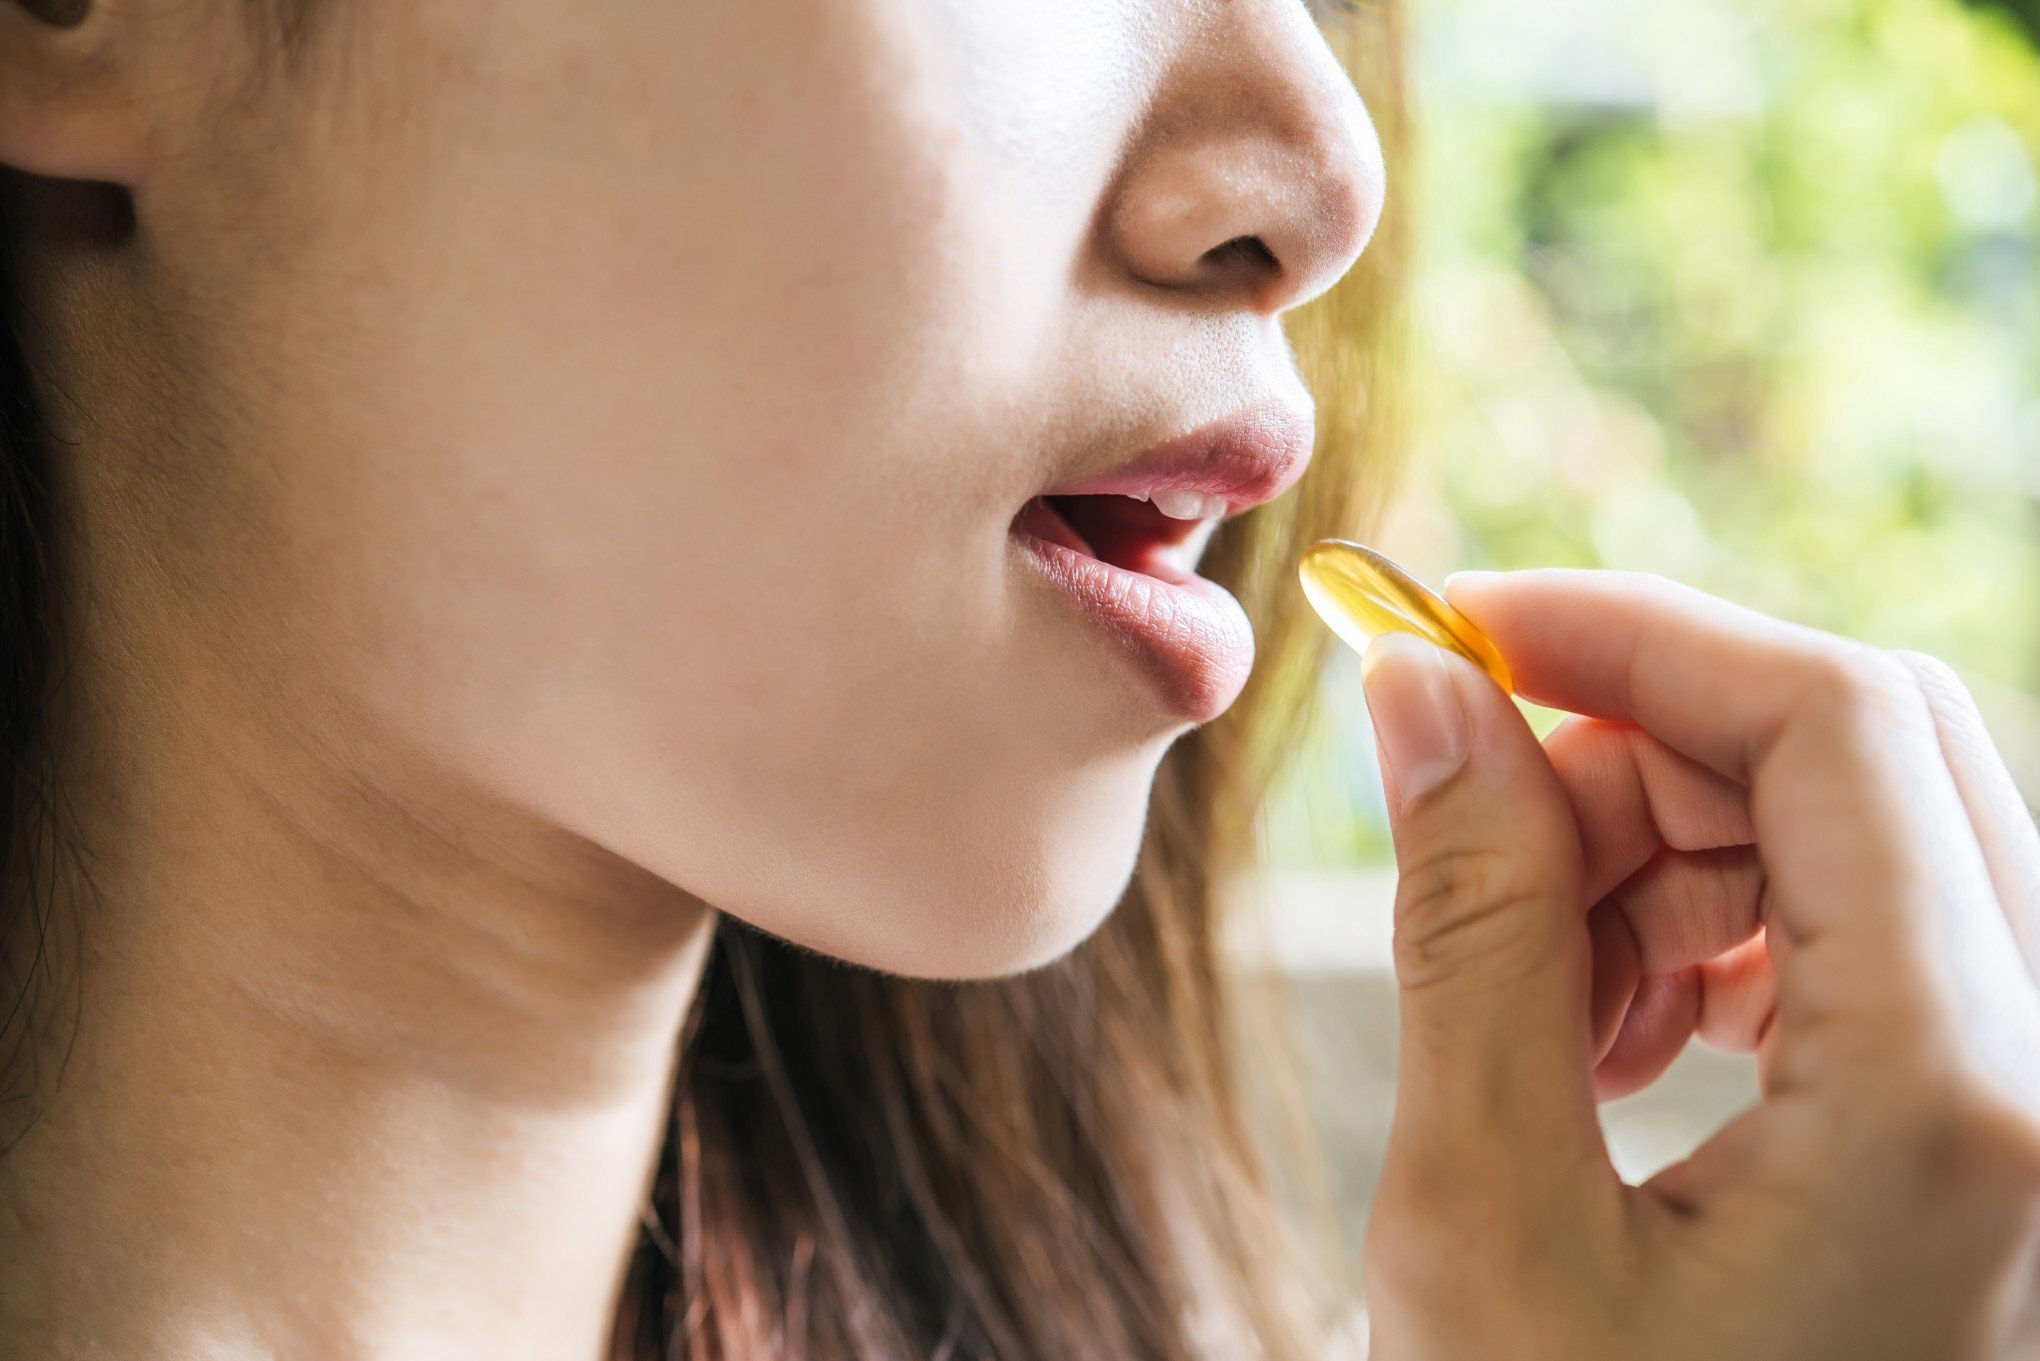 Tomar vitamina C evita a gripe e outras doenças respiratórias?